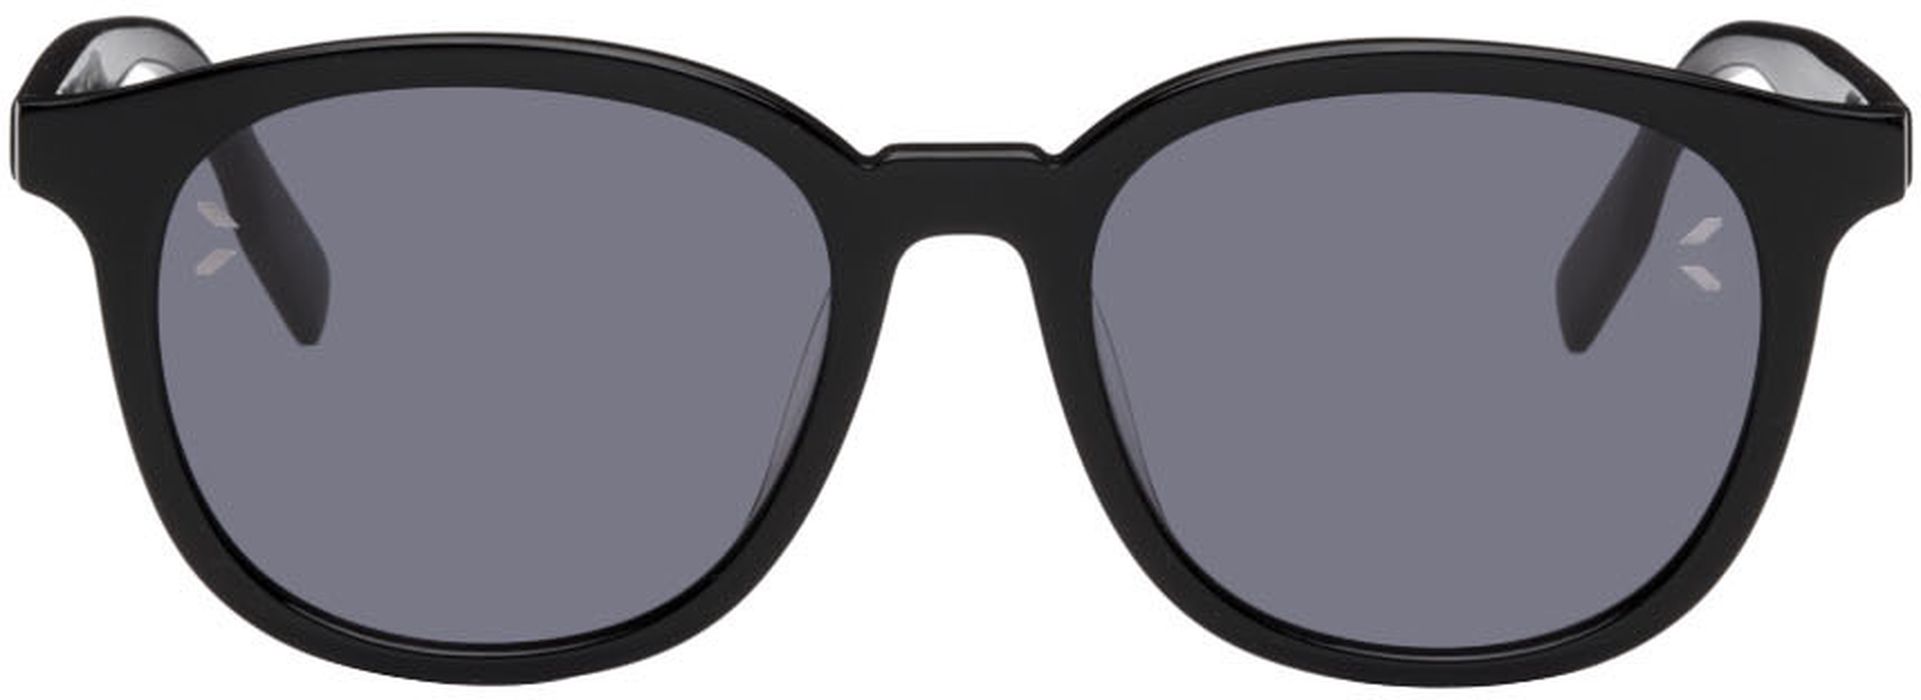 MCQ Black Round Acetate Sunglasses